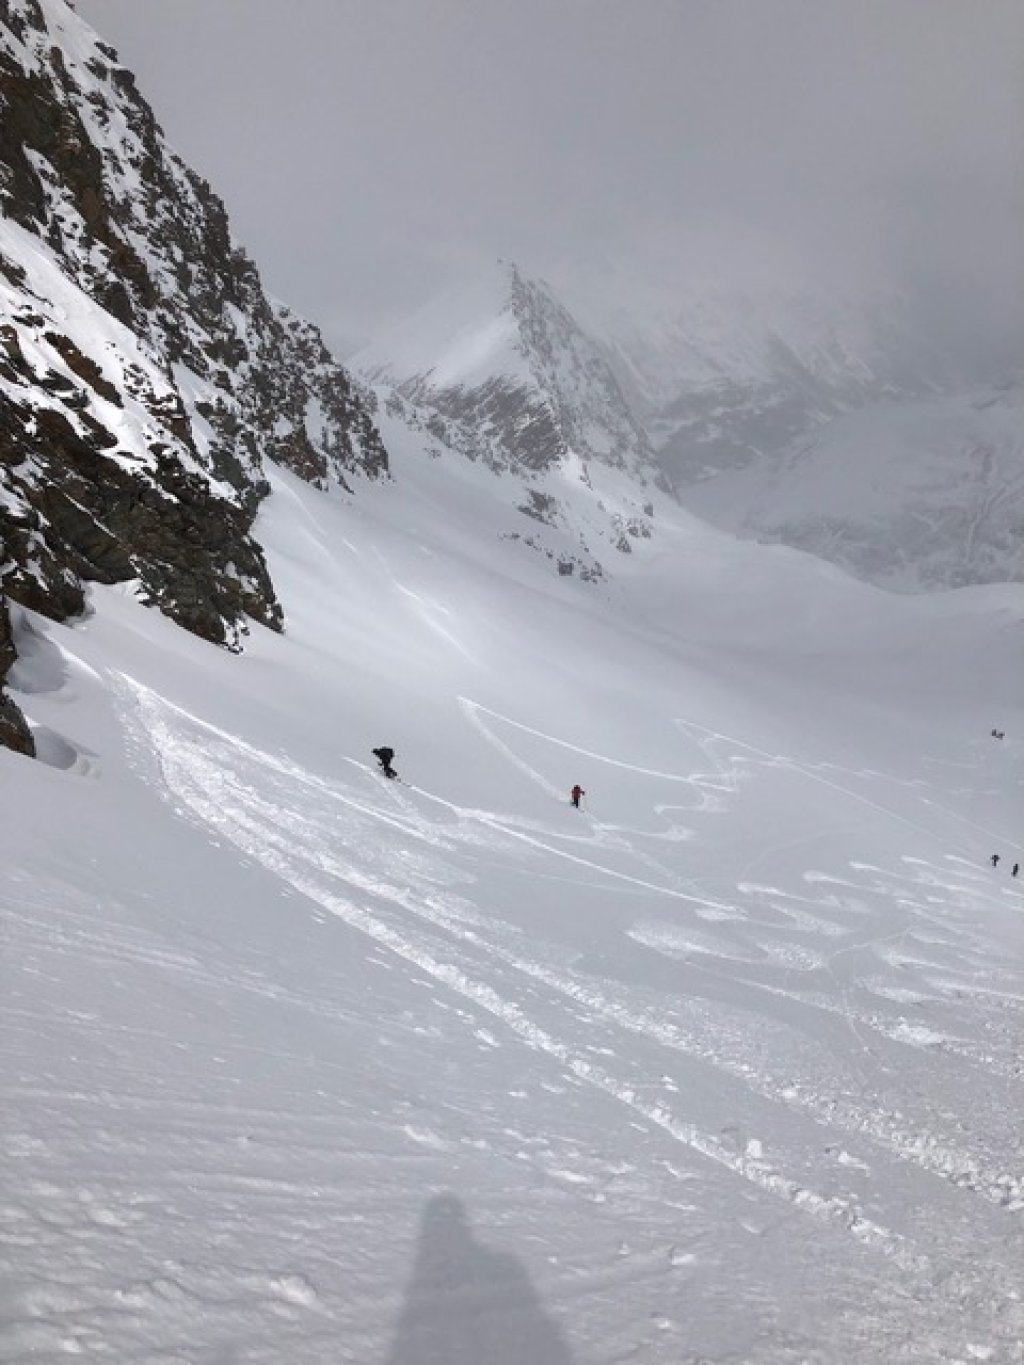 Ascent on the last remnants of the Hangererferner glacier